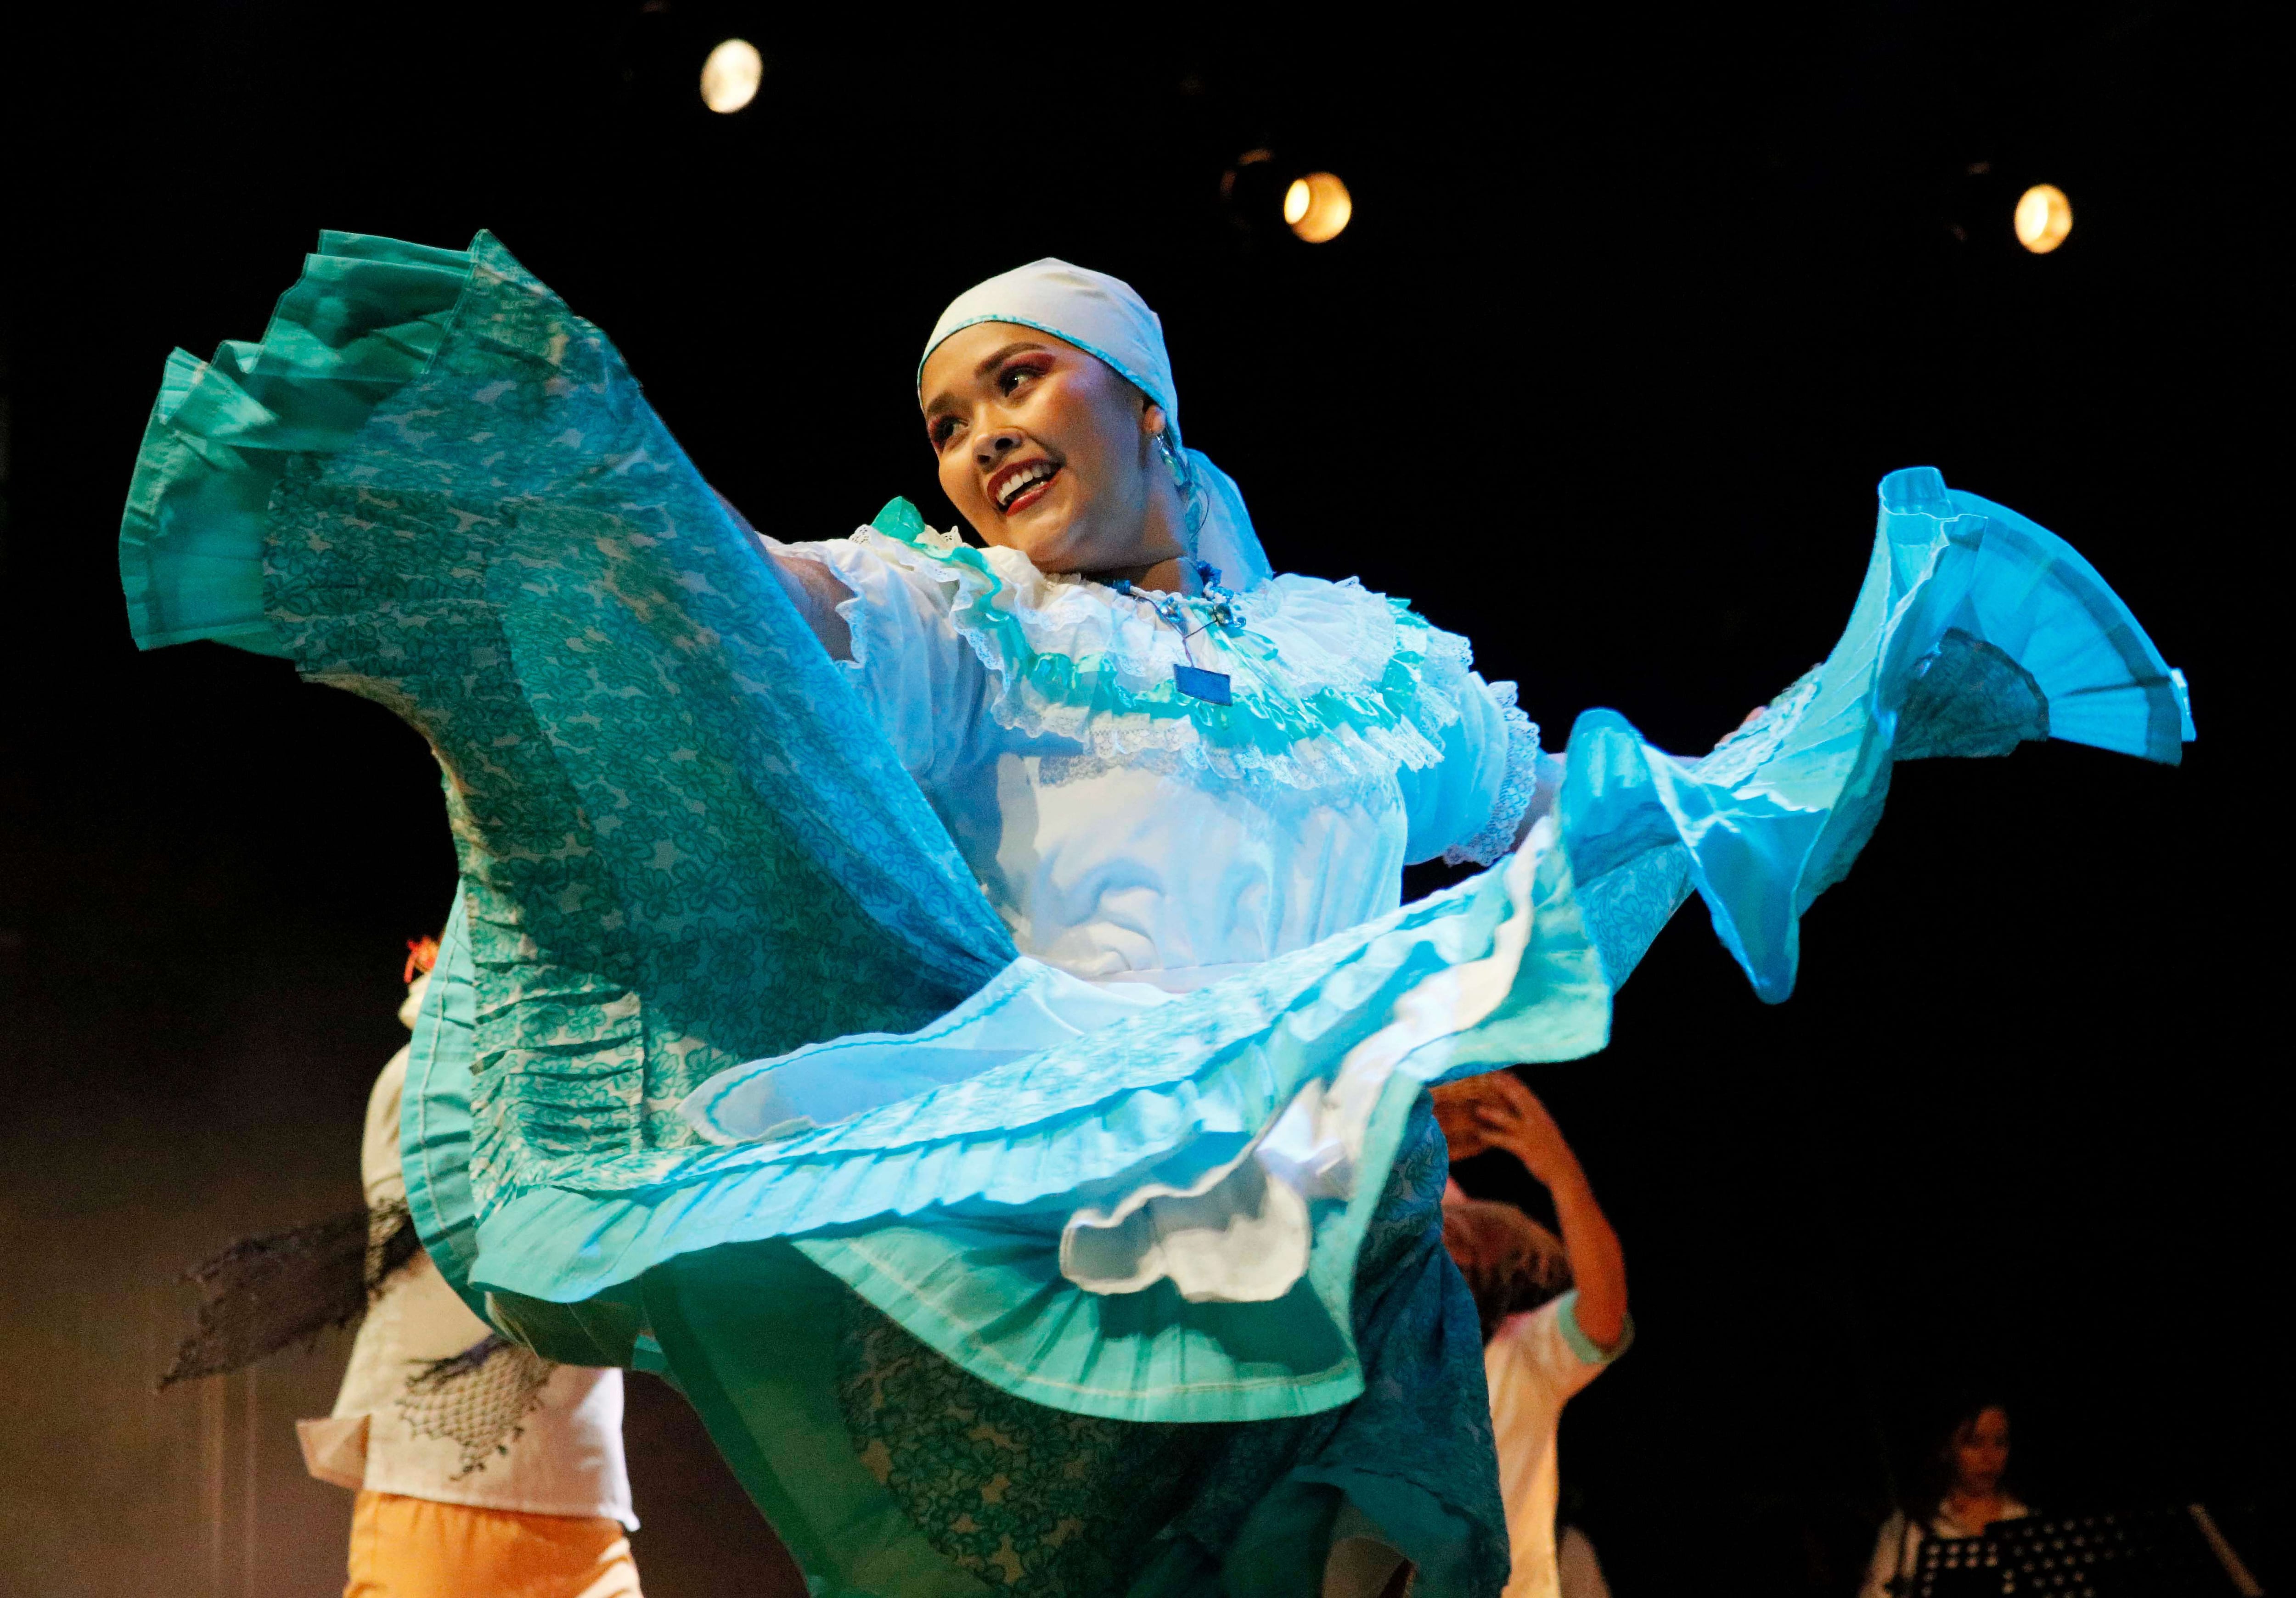 El Festival Nacional de Expresiones Culturales Emilia Prieto Tugores se realizó por primera vez en el 2013, como un homenaje a la educadora, pintora e investigadora costarricense.